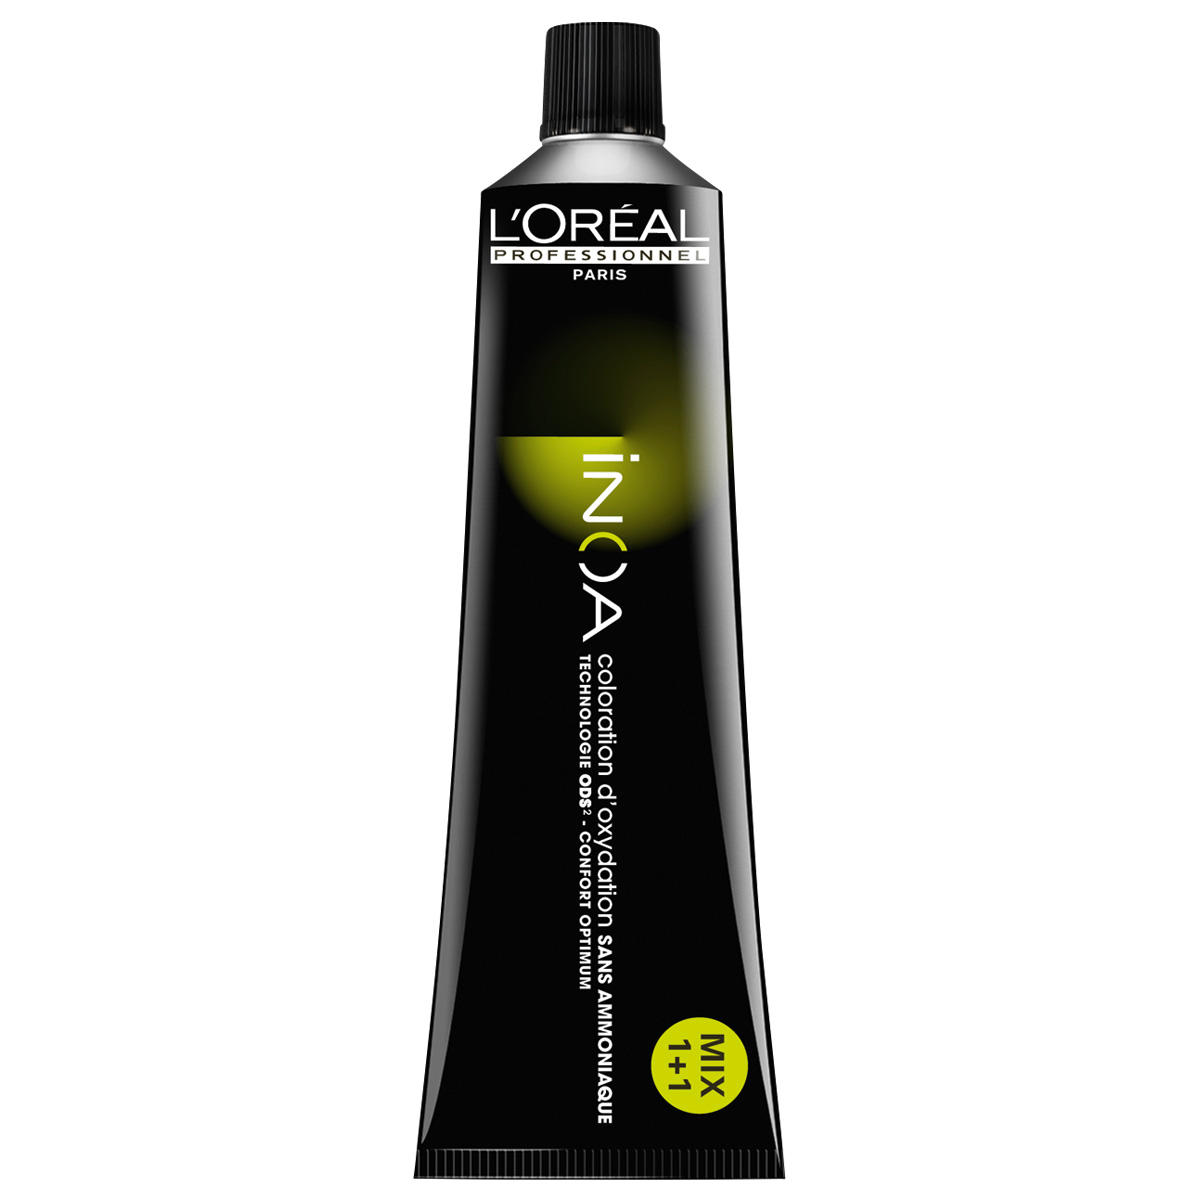 L'Oréal Professionnel Paris Coloration 9.1 Cenere bionda molto chiara, tubo 60 ml - 1